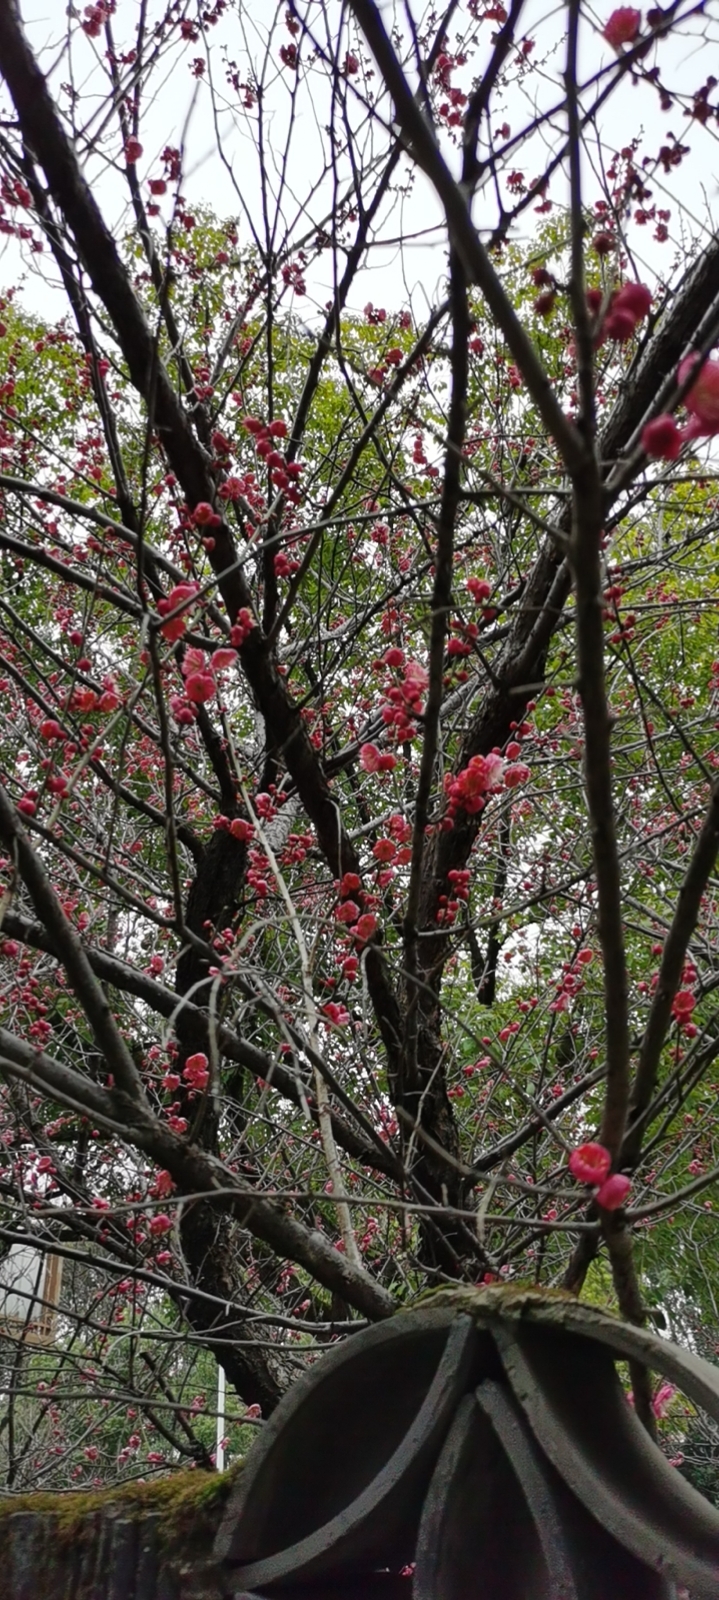 碧桃(学名：Amygdalus persica L.var.persica f.duplex Rehd.)：是植物桃的变种，属于观赏桃花类的半重瓣及重瓣品种，统称为碧桃。落叶小乔木，高可达8米，一般整形后控制在3-4米之间。树冠广卵形，树皮灰褐色。枝条红褐色，无毛。单叶椭圆状或披针形。花单生或两朵生于叶腋。花有单瓣、半重瓣和重瓣，春季先叶或与叶同时开放；花色有白、粉红、红和红白相间等色。碧桃性喜阳光，耐旱，不耐潮湿的环境。喜欢气候温暖的环境，耐寒性好，能在零下25摄氏度的自然环境安然越冬。碧桃花朵丰腴，色彩鲜艳丰富，花型多。常见的品种有红花绿叶碧桃、红花紫叶碧桃，白红双色洒金碧桃等多个变种。具有很高的观赏价值，在小区、公园、街道随处可见的美丽植物。原产中国，分布在西北、华北、华东、西南等地。世界各国多有引种栽培。(概述图片参考资料来源：)